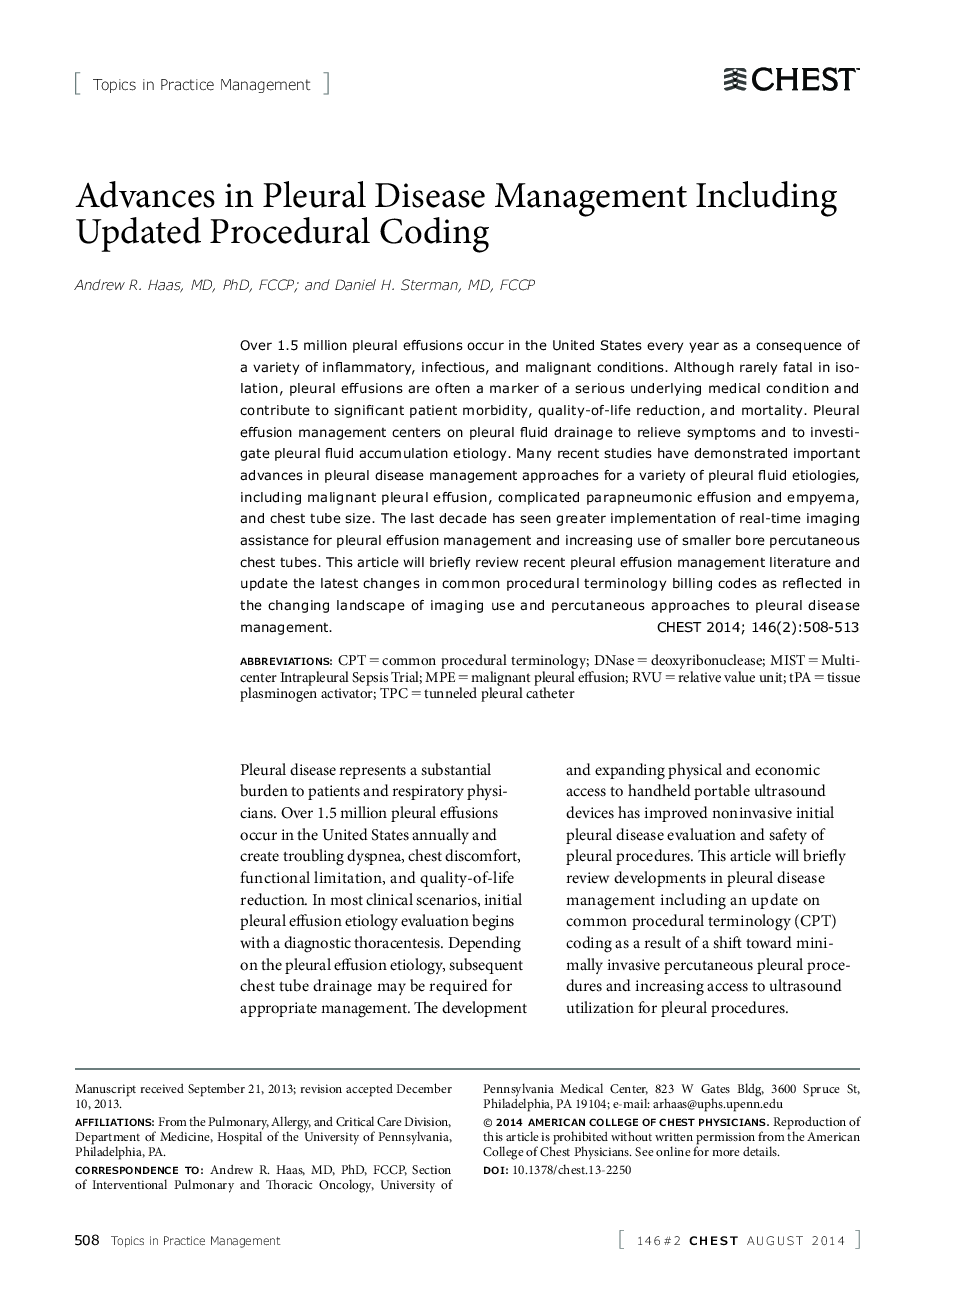 پیشرفت در مدیریت بیماری های پلورال شامل به روز رسانی روش پردازش 